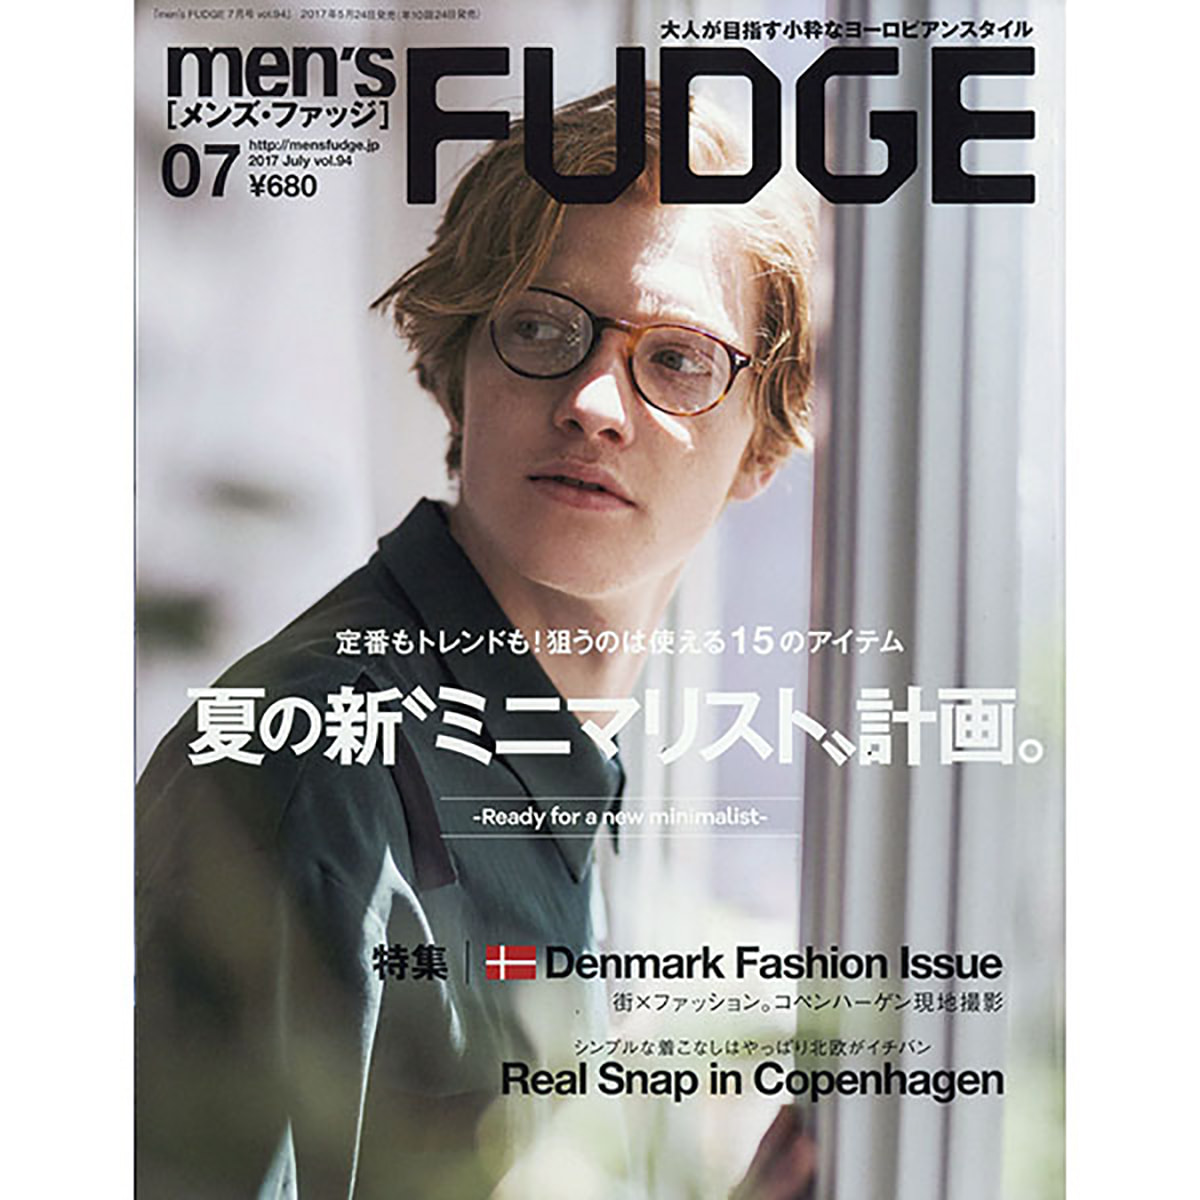 定期購読 Men S Fudge メンズファッジ 24日発行 年間10冊分 の卸 通販 ビューティガレージ